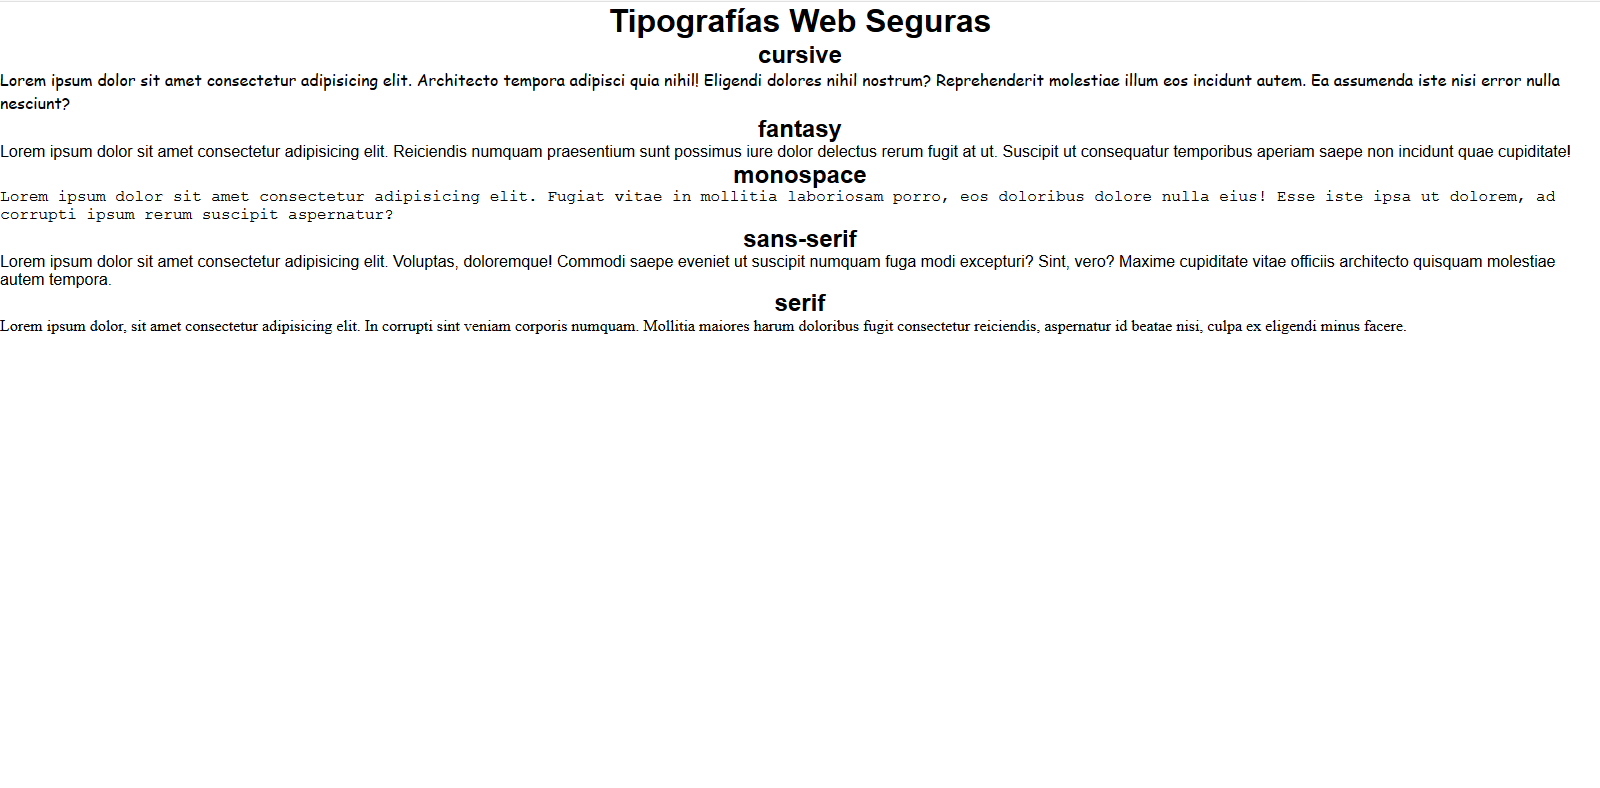 Tipografias Web Seguras